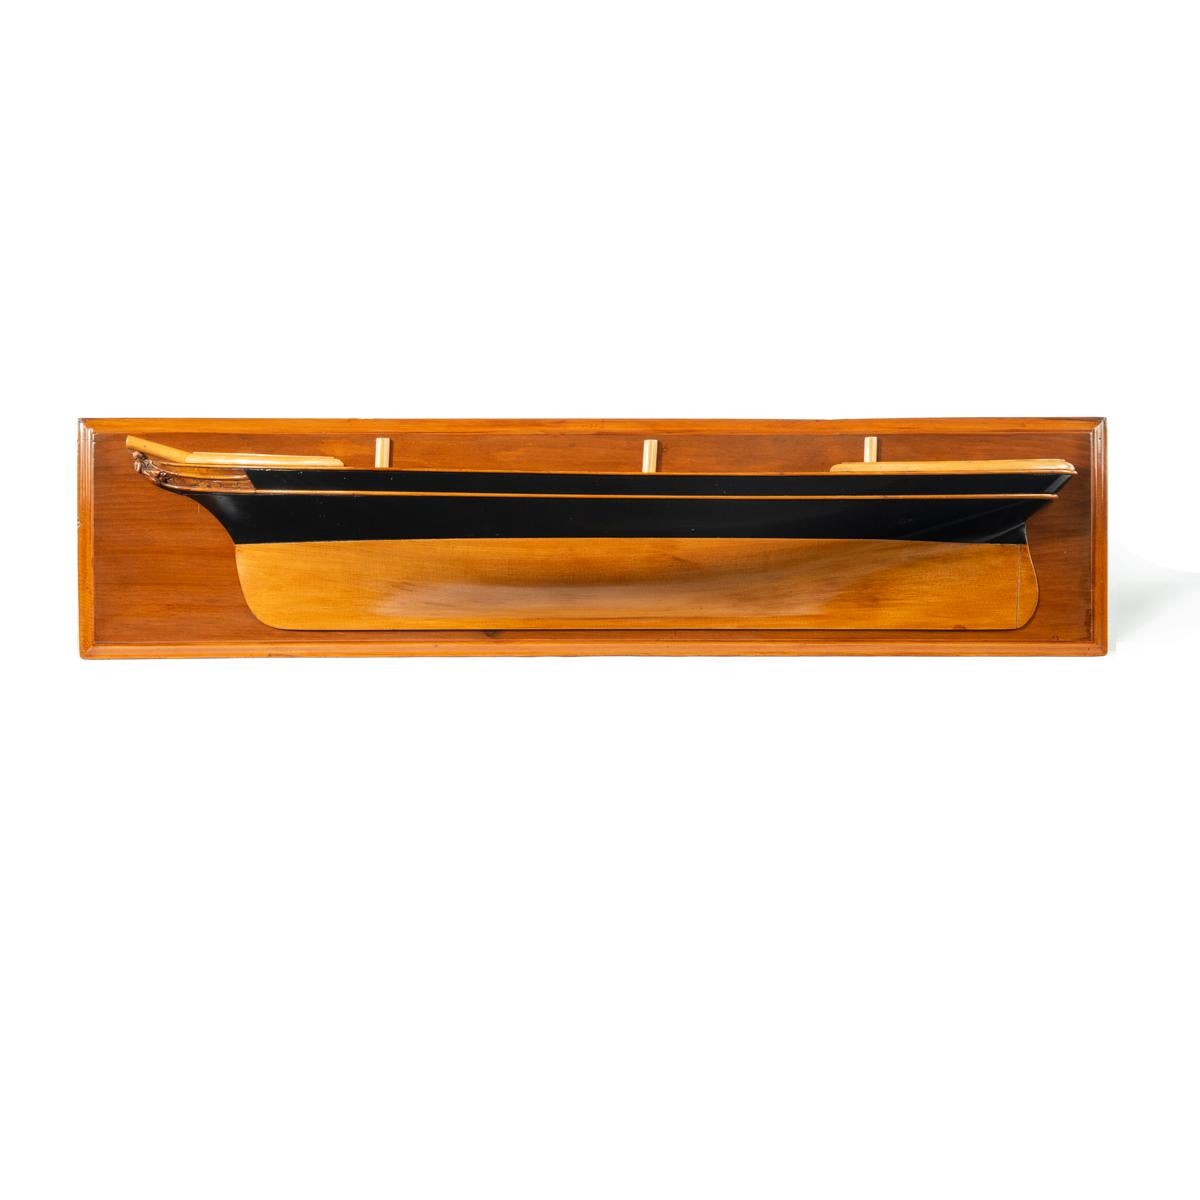 Modèle victorien de demi-coque d'une goélette anglaise à trois mâts, représentée face à la gauche, la coque en bois souple façonnée avec des côtés supérieurs peints en noir et des rambardes et des plats-bords en bois appliqués, la proue avec des